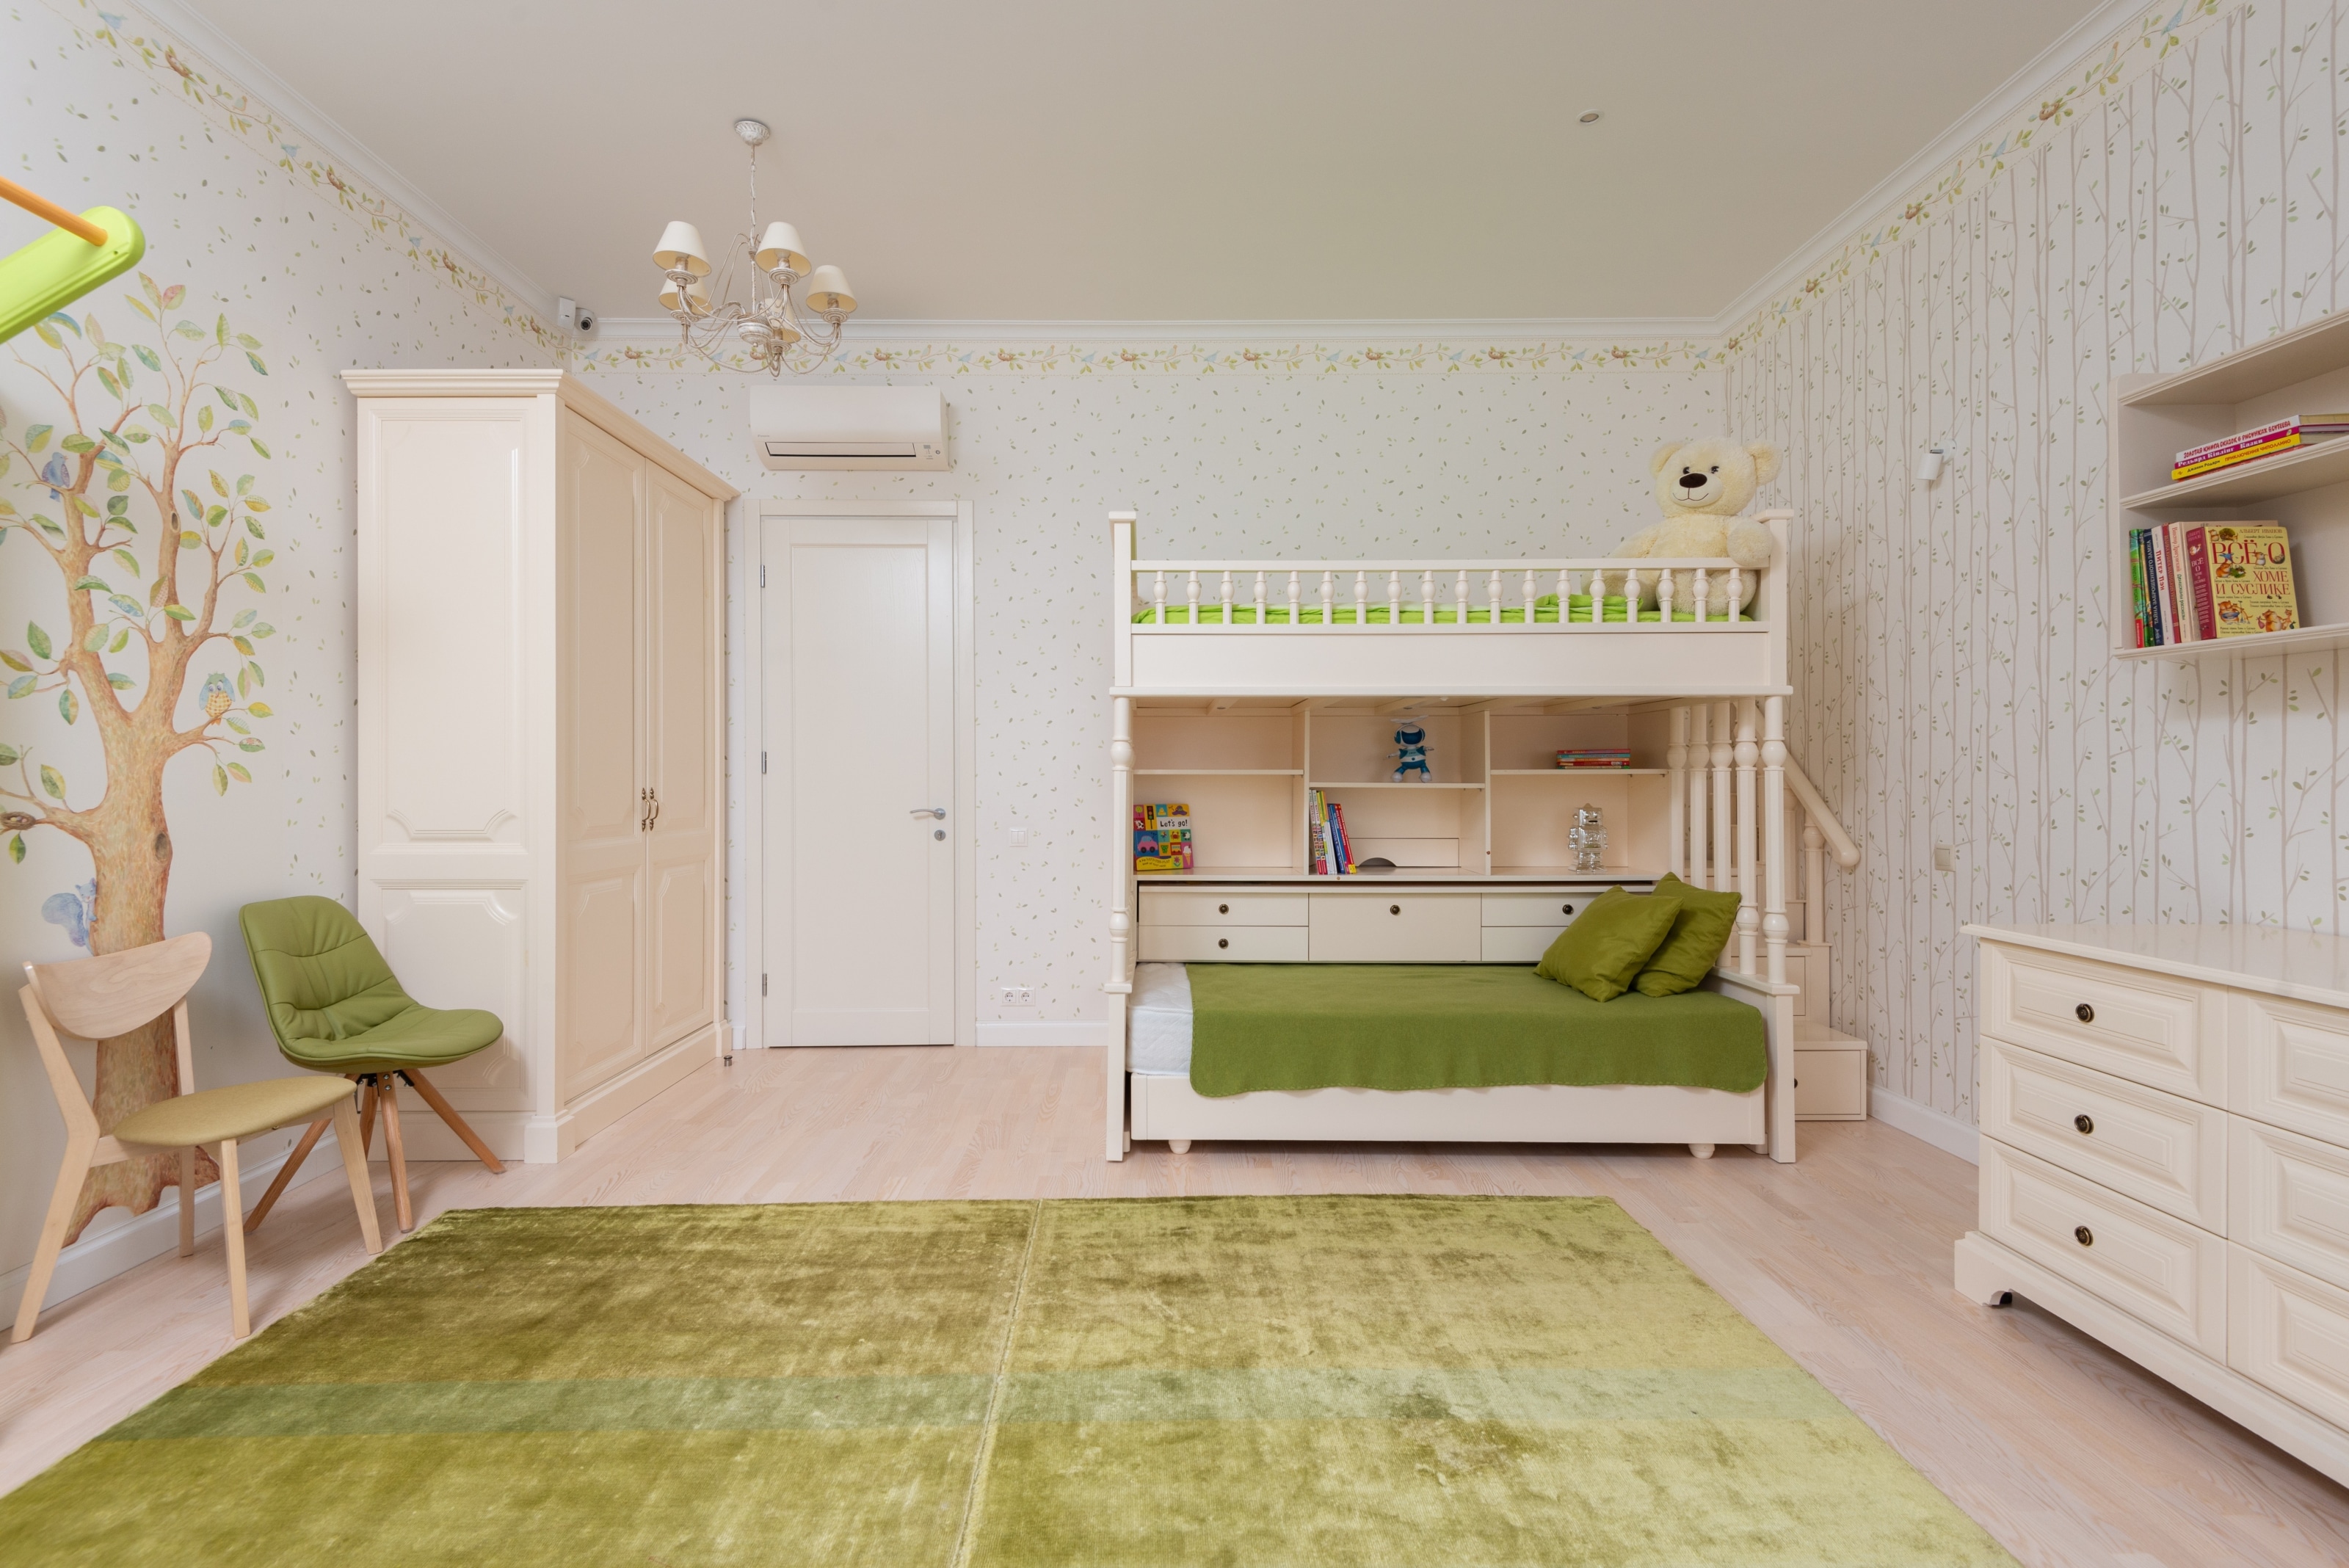 Nos conseils pour aménager et décorer une chambre d'enfant